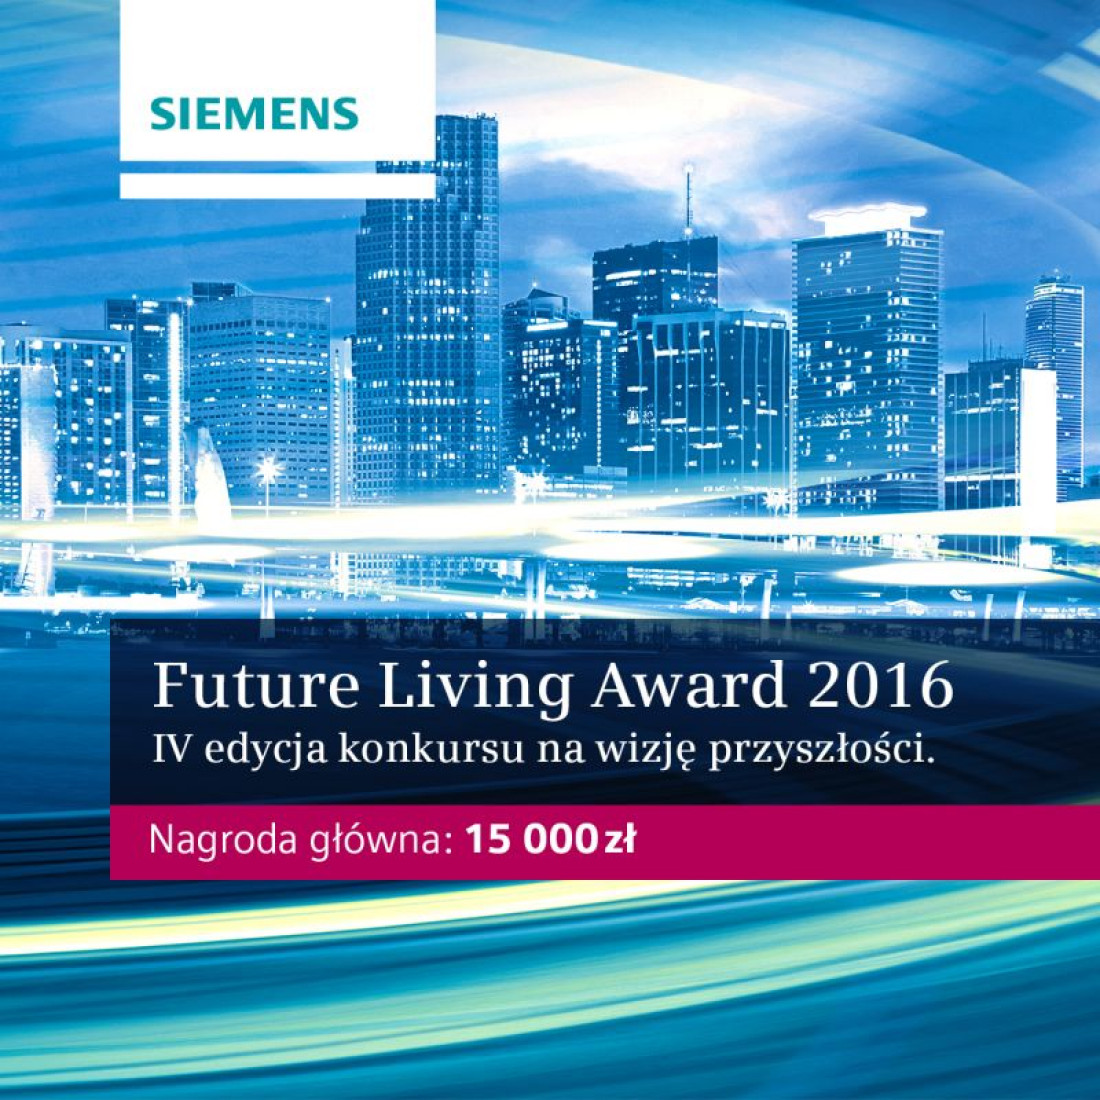 Siemens: Future Living Award – dołącz do wizjonerów